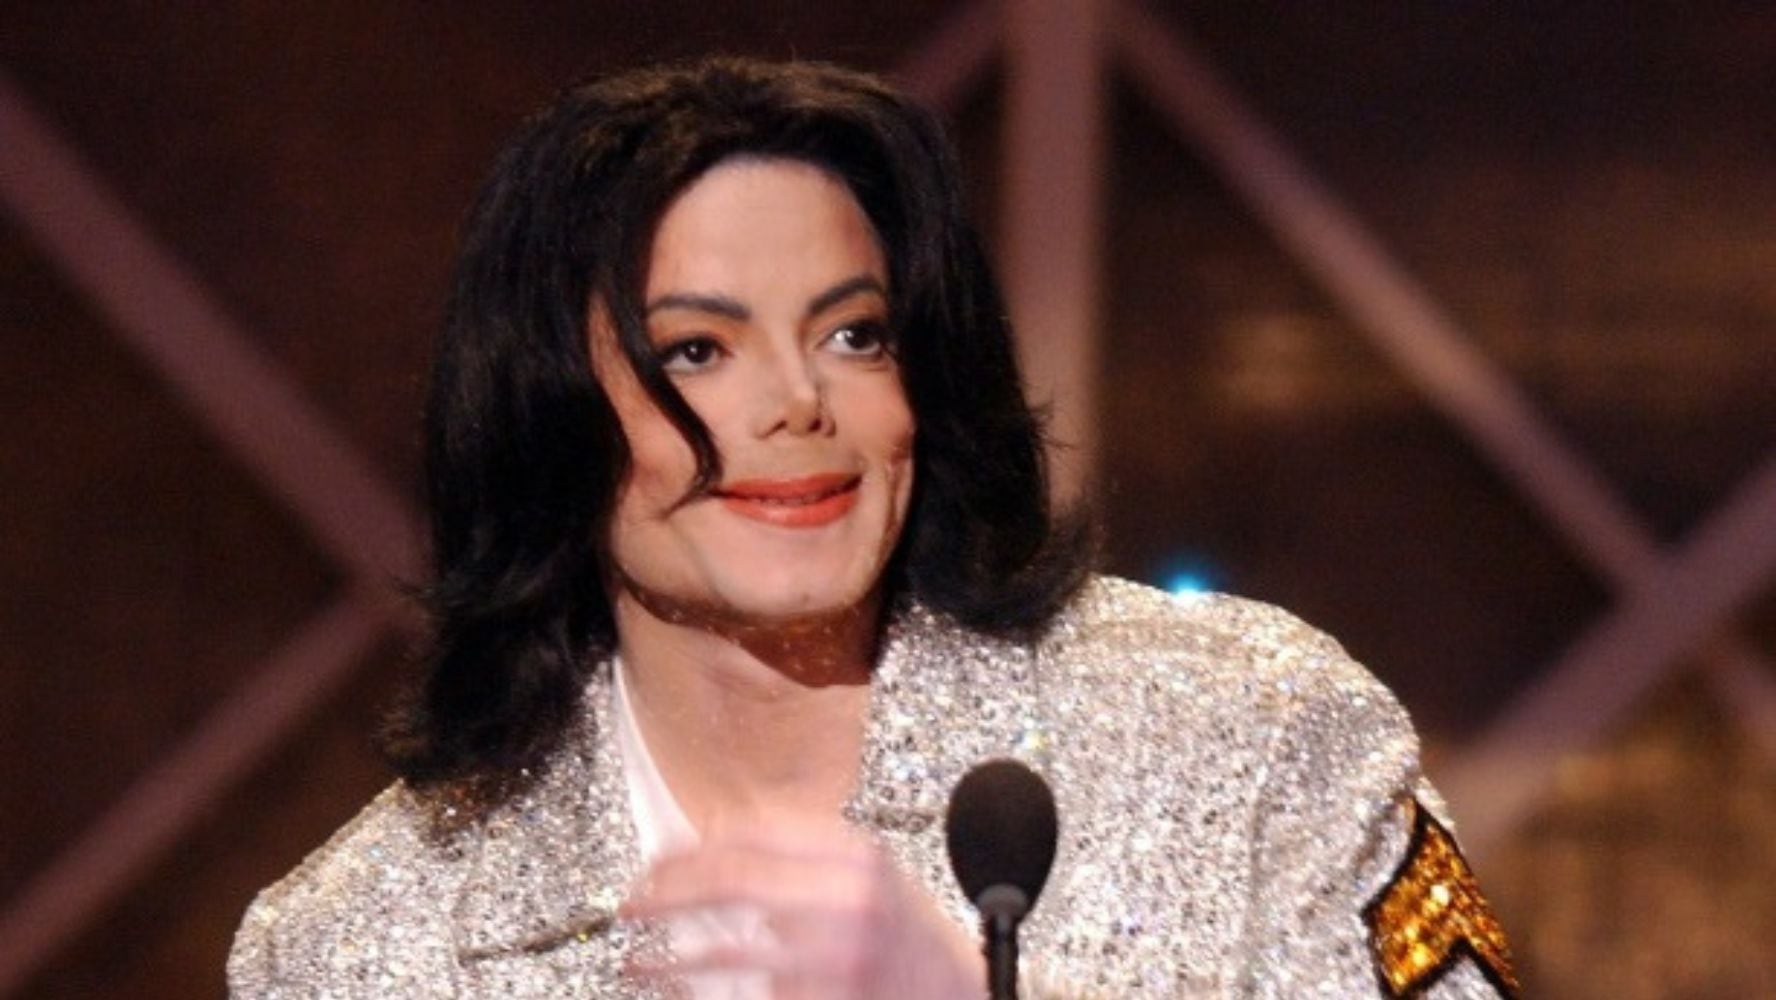 El Tribunal de California tiene documentos donde aseguran que Michael Jackson estaba endeudado al morir. (Foto: Instagram @michaeljackson)